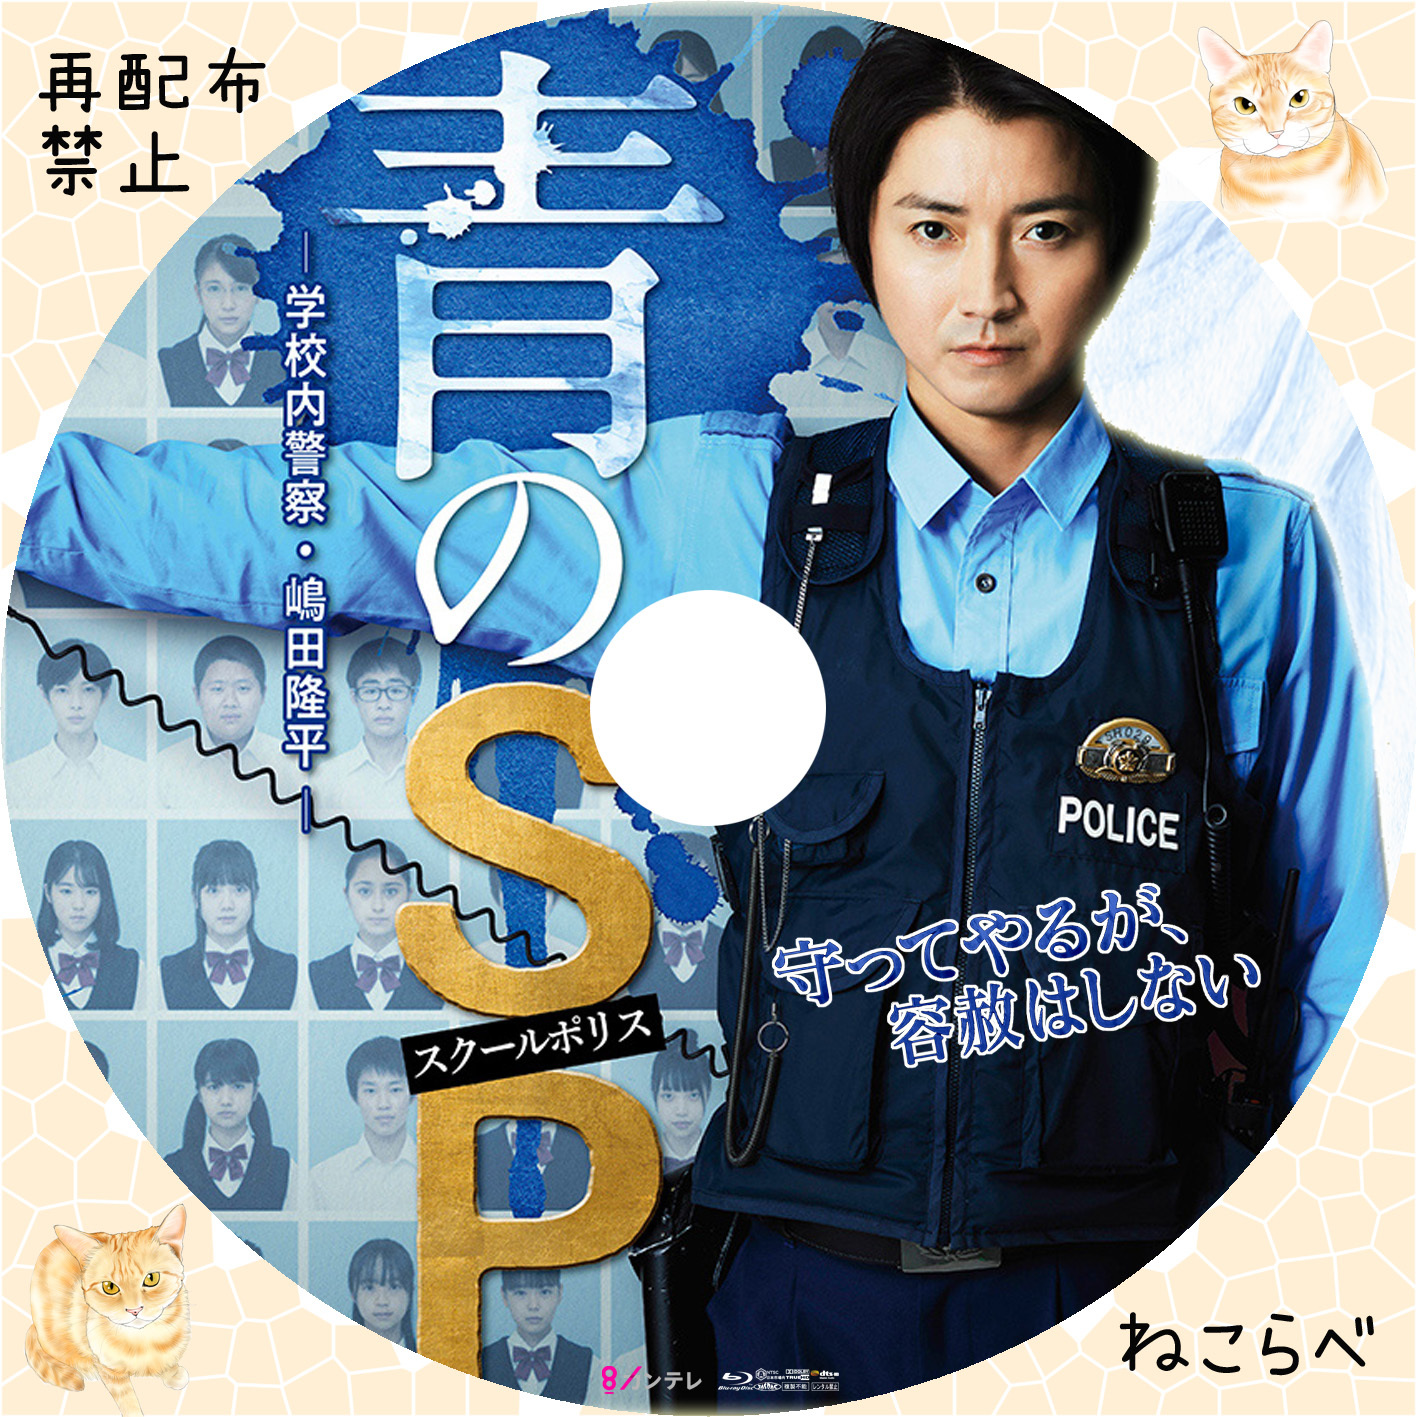 青のSP(スクールポリス)-学校内警察・嶋田隆平- DVD-BOX〈6枚組 